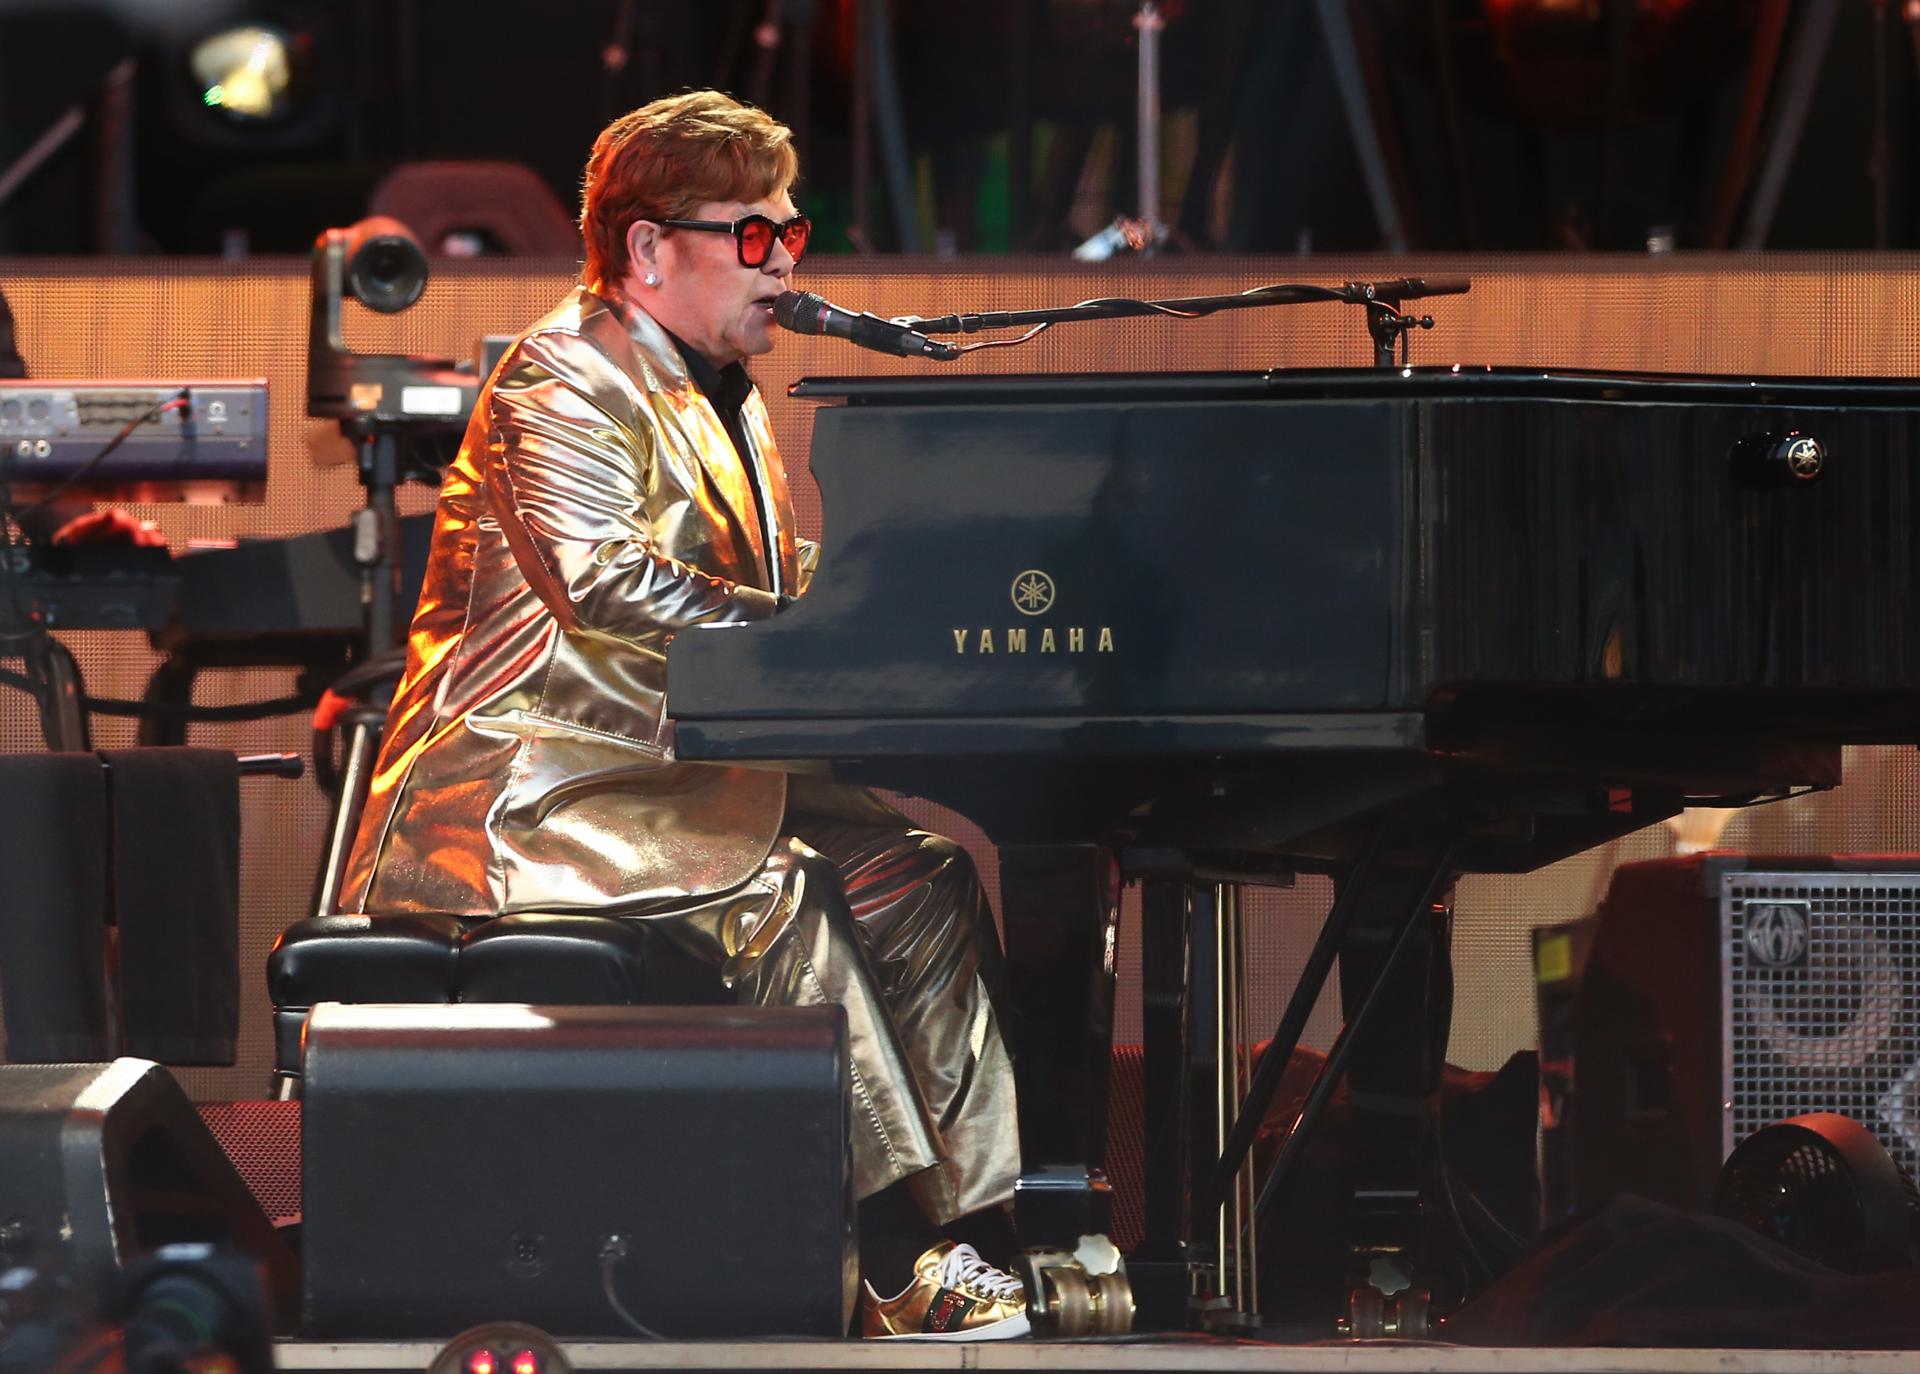 Elton John se despide de los escenarios tras "52 años de pura alegría tocando música"